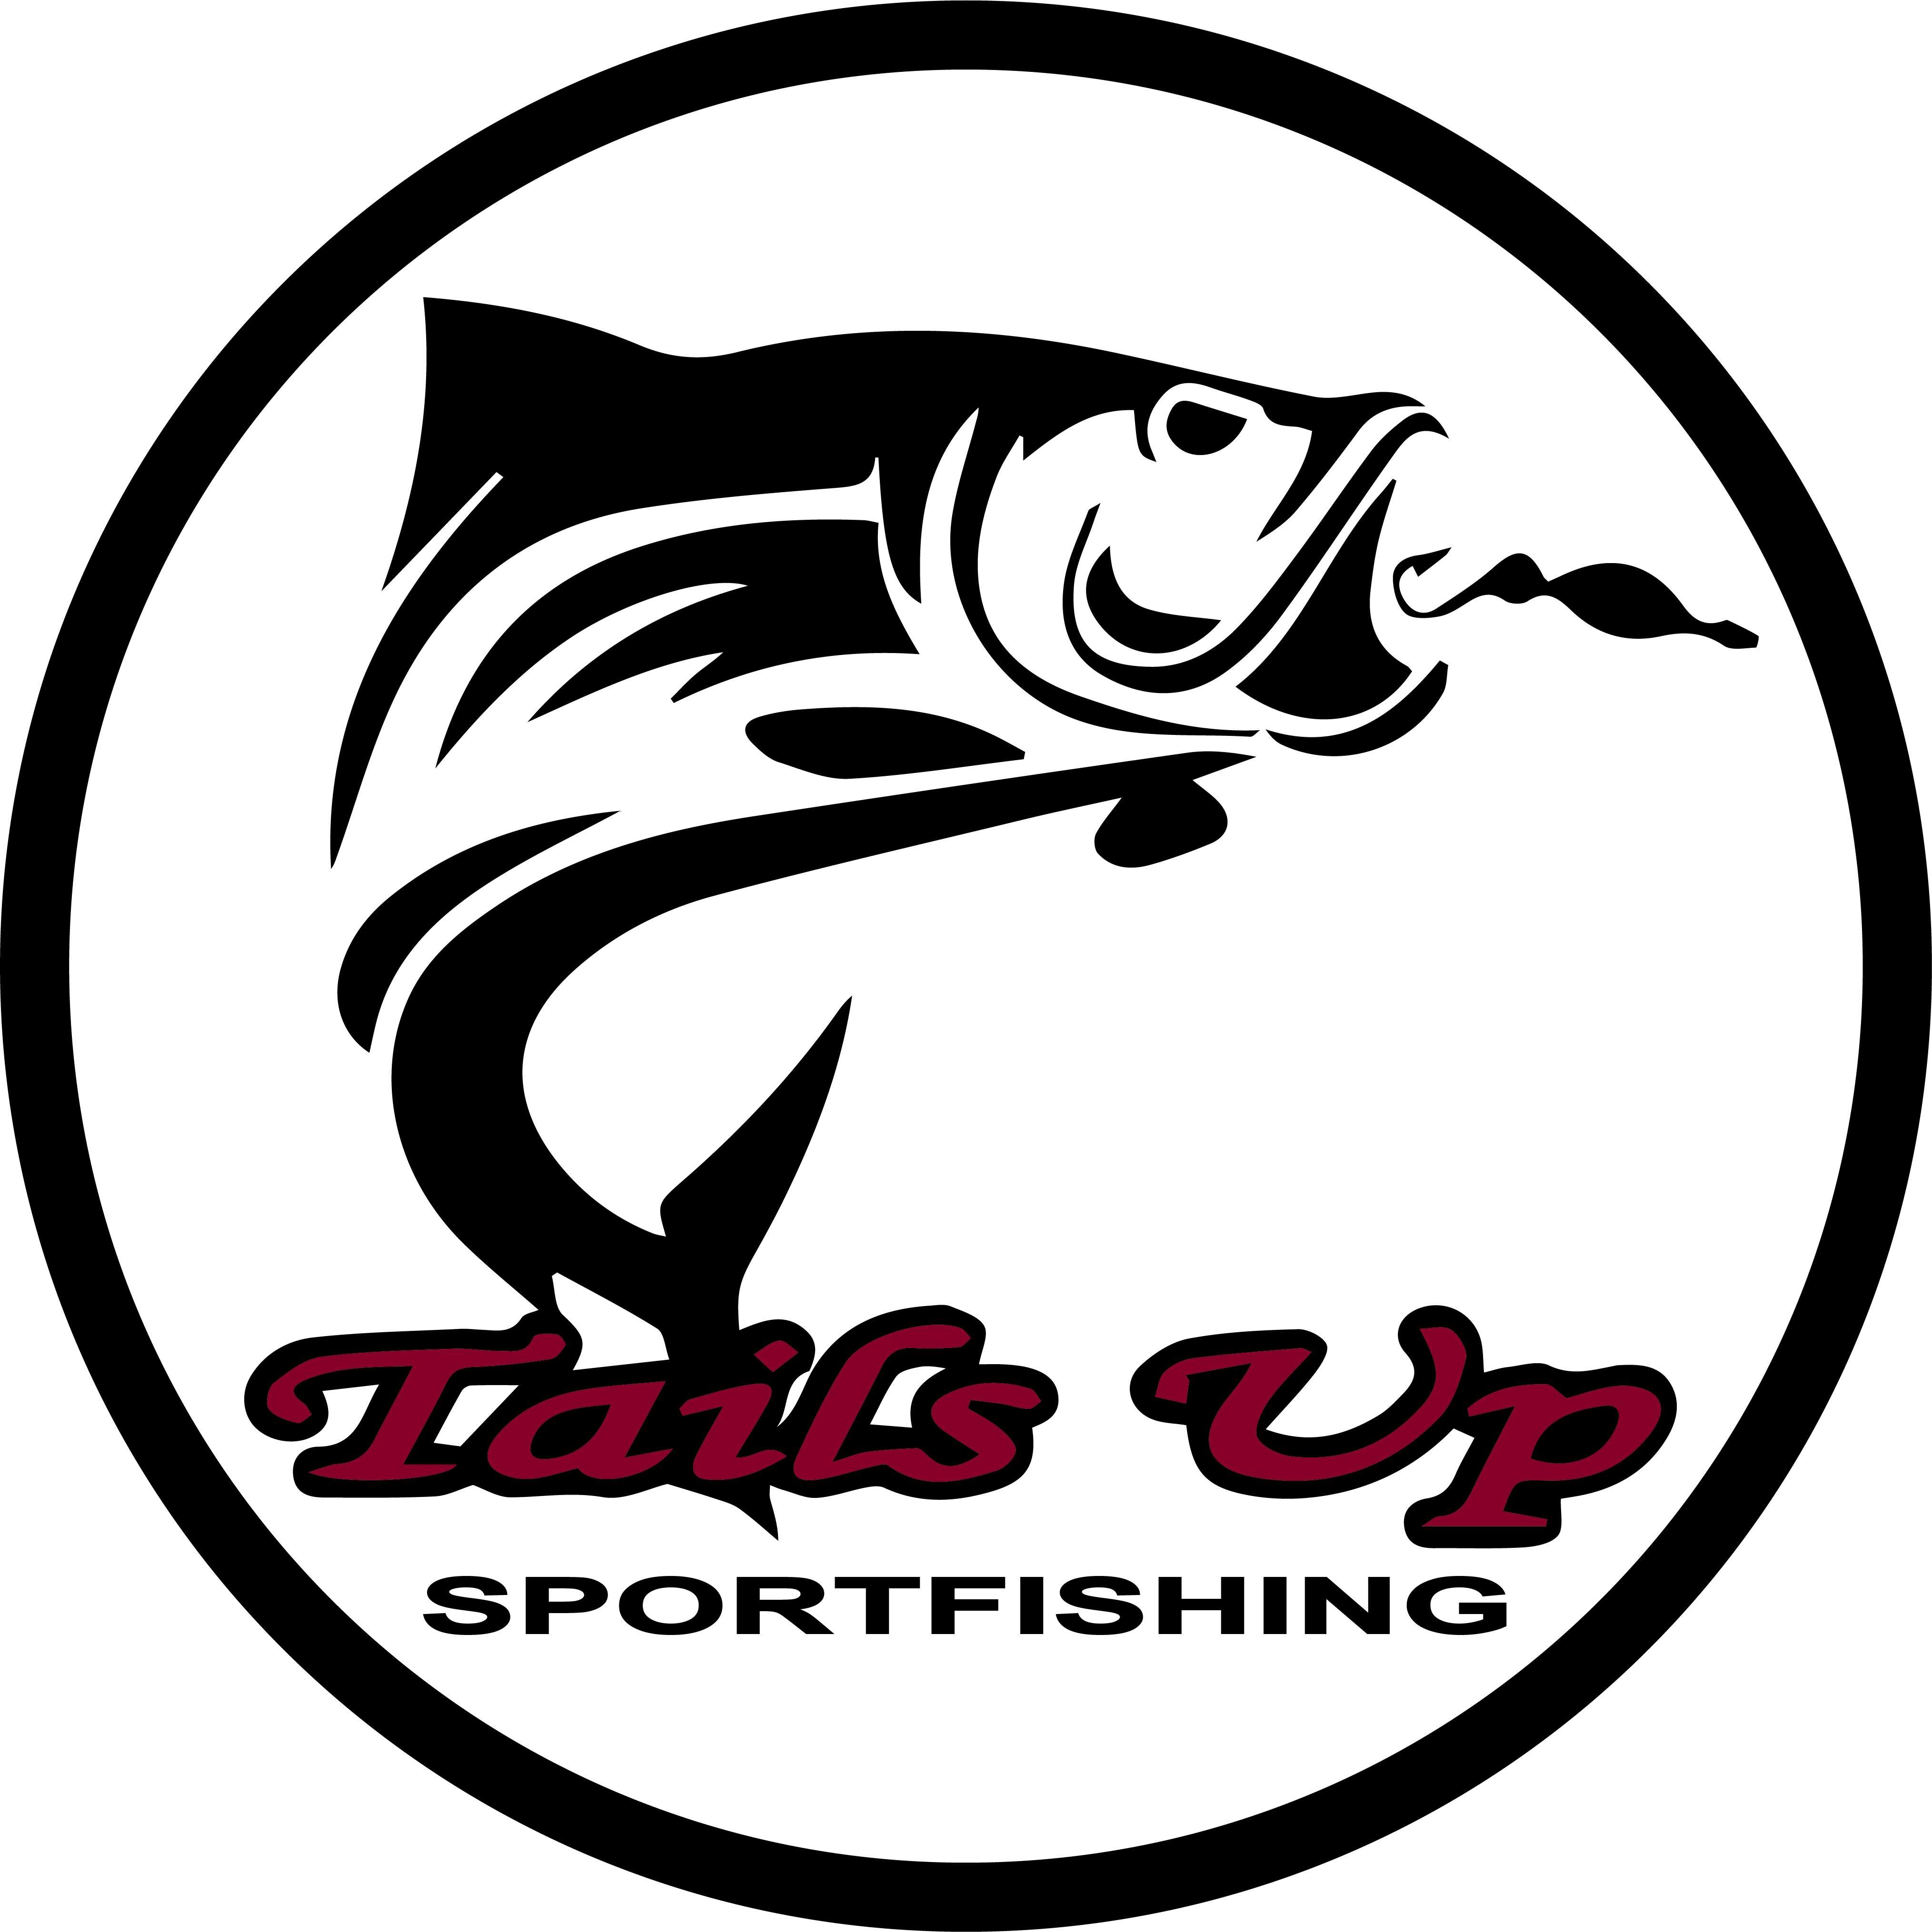 Tails Up Sportfishing